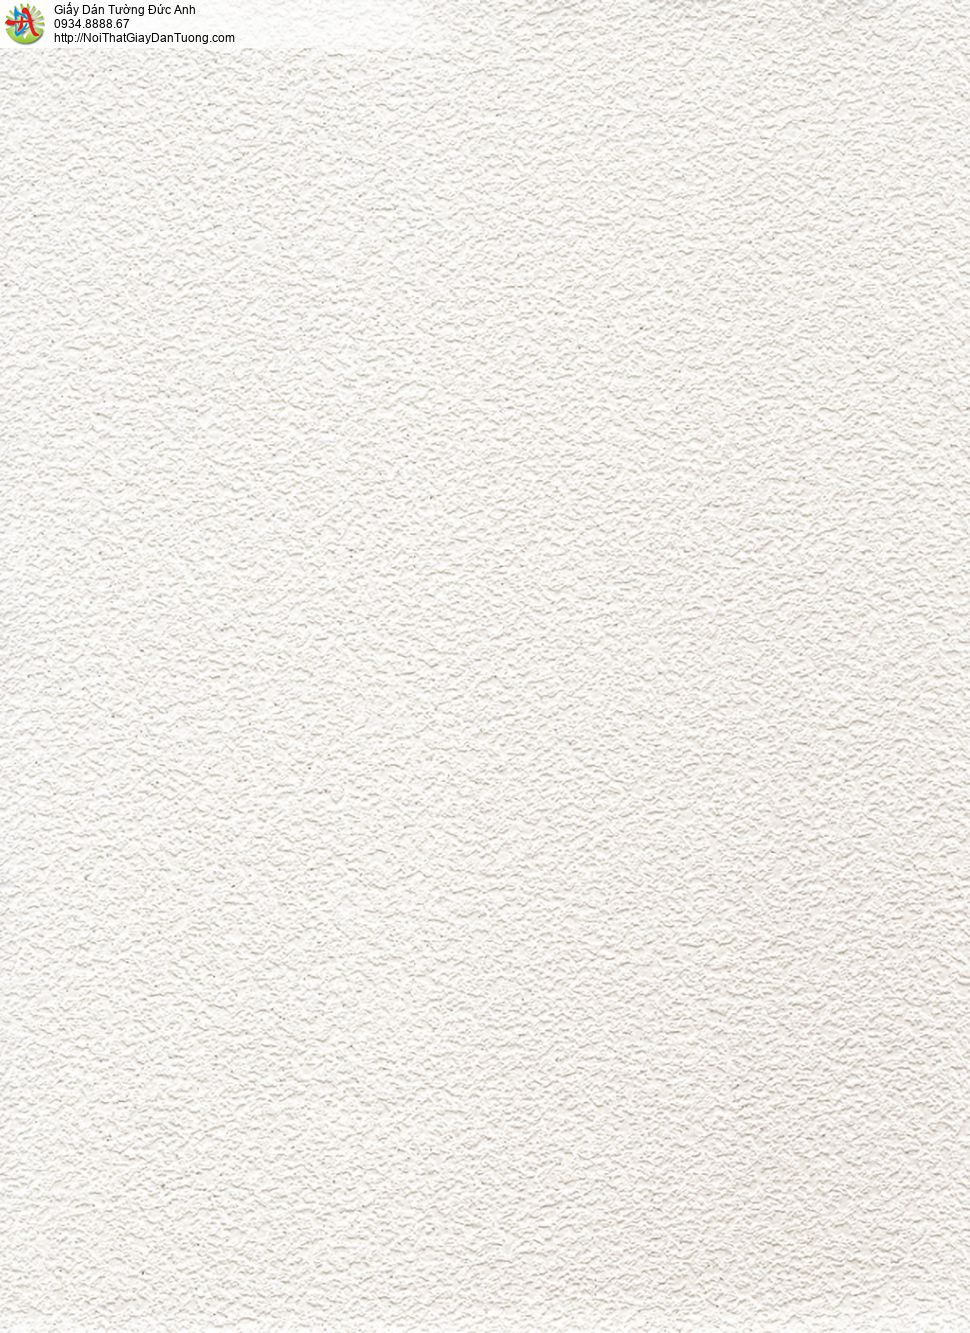 65000-1- Giấy dán tường dạng gân màu trắng có kim tuyến, giấy đơn giản